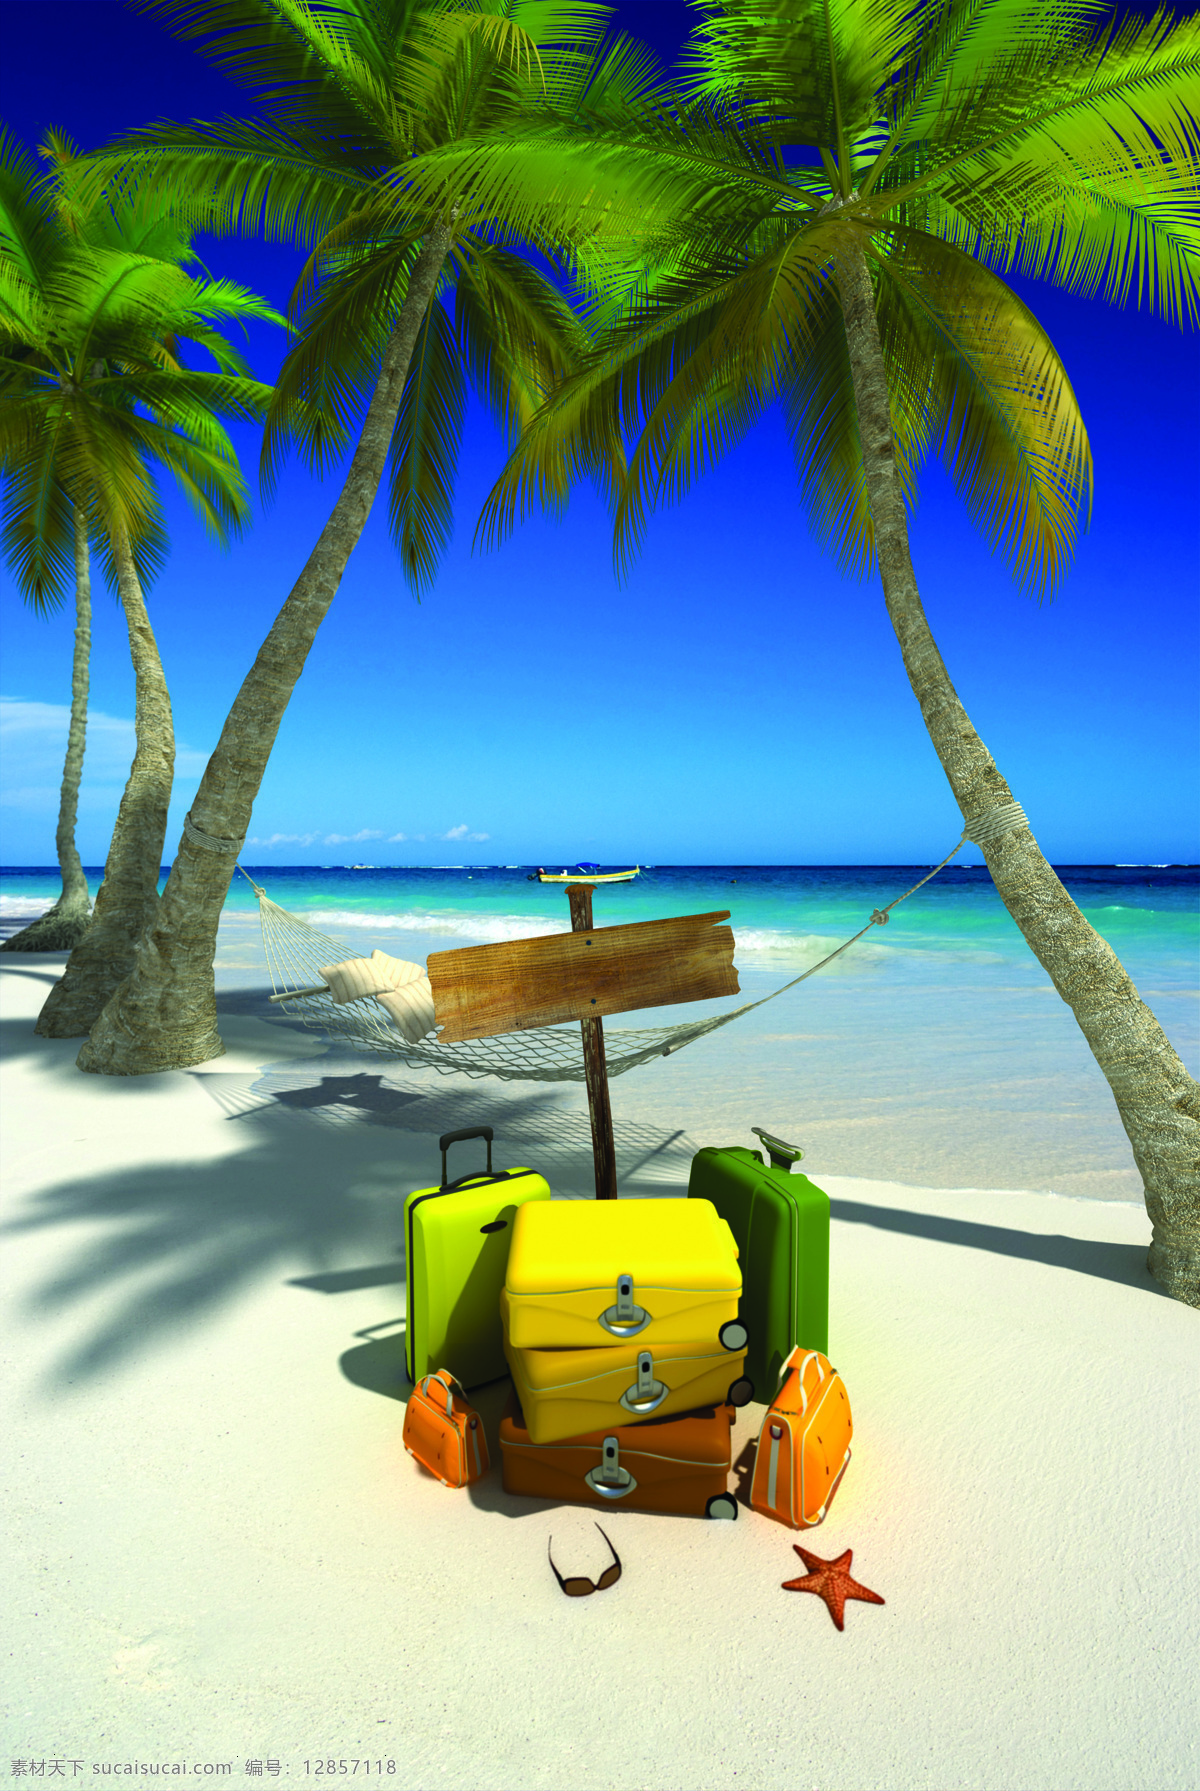 海边 沙滩 上 椰子 树下 皮箱 蓝天 白云 大海 海浪 浪花 树 椰子树 吊床 箱子 海星 墨镜 大海图片 风景图片